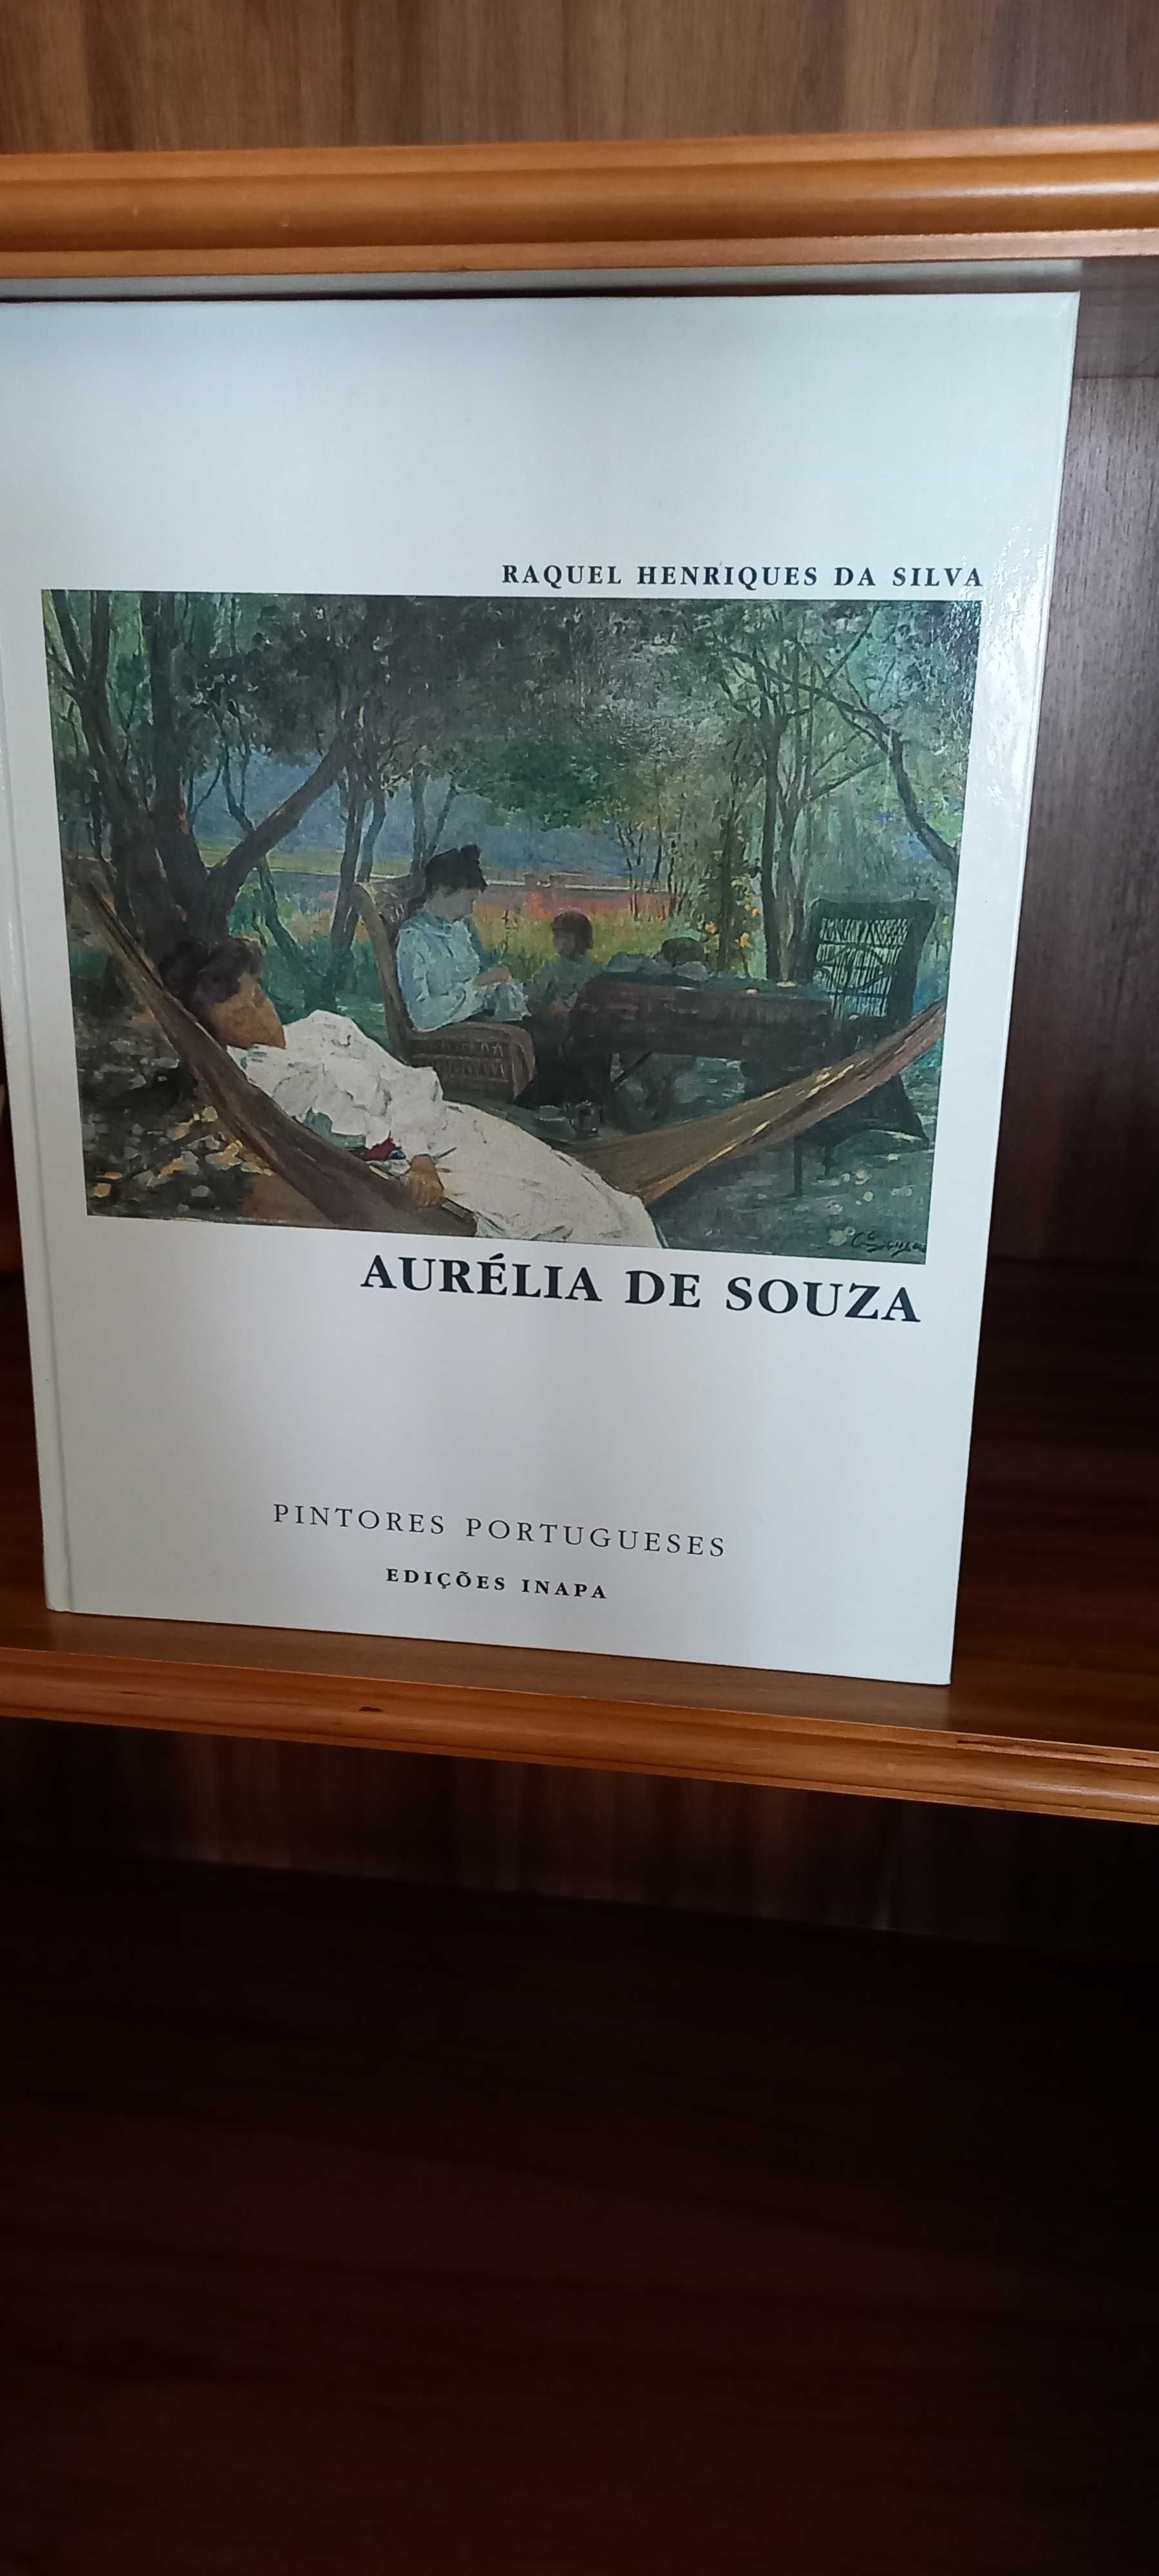 Livro sobre pintura de Aurélia de Sousa